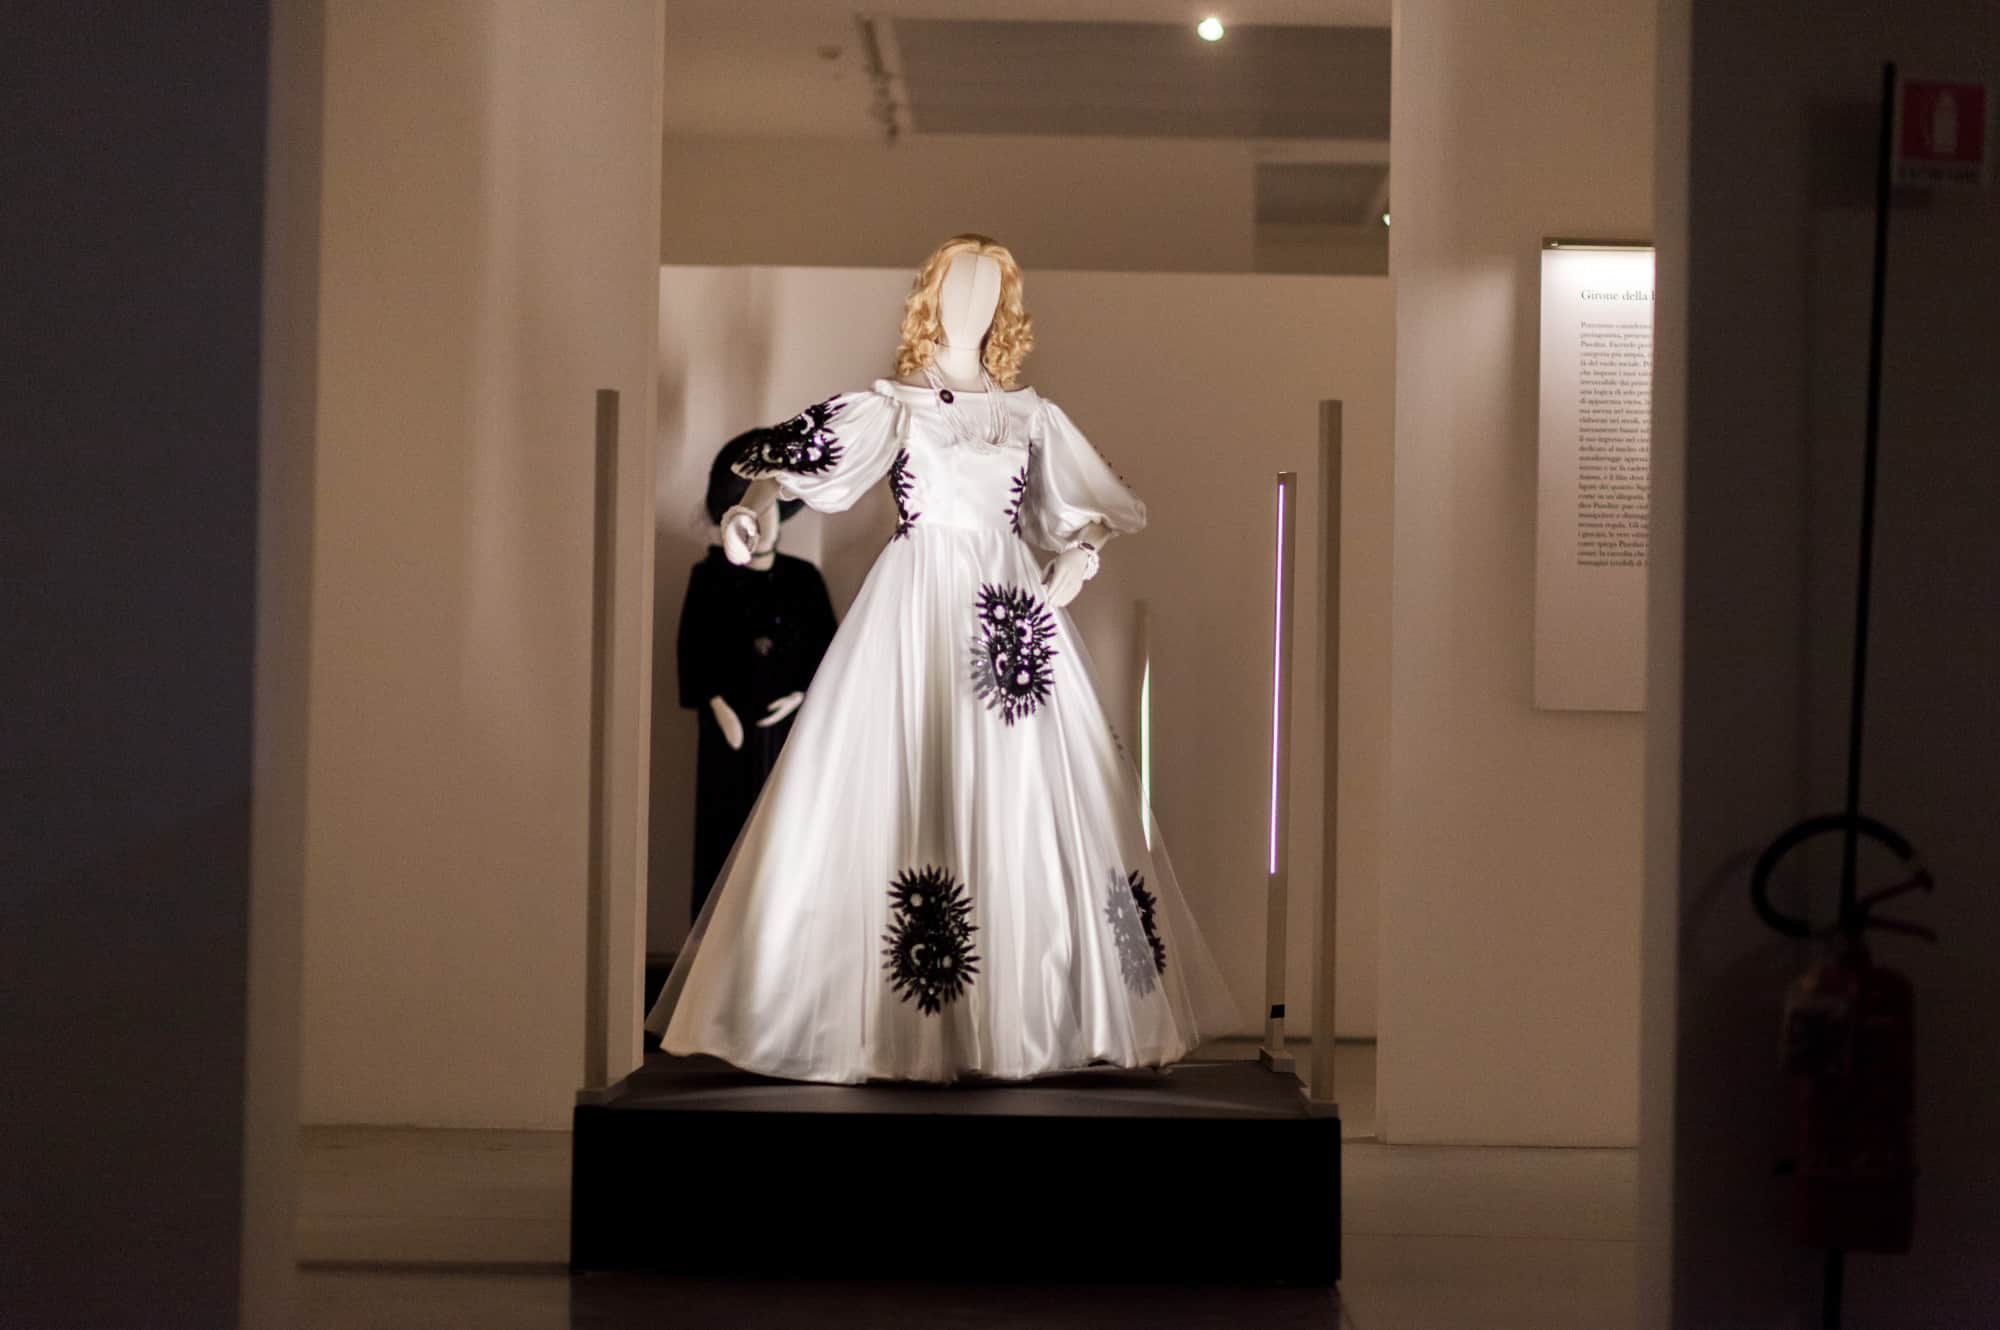 Bonaveri mannequins for pasolini exhibition